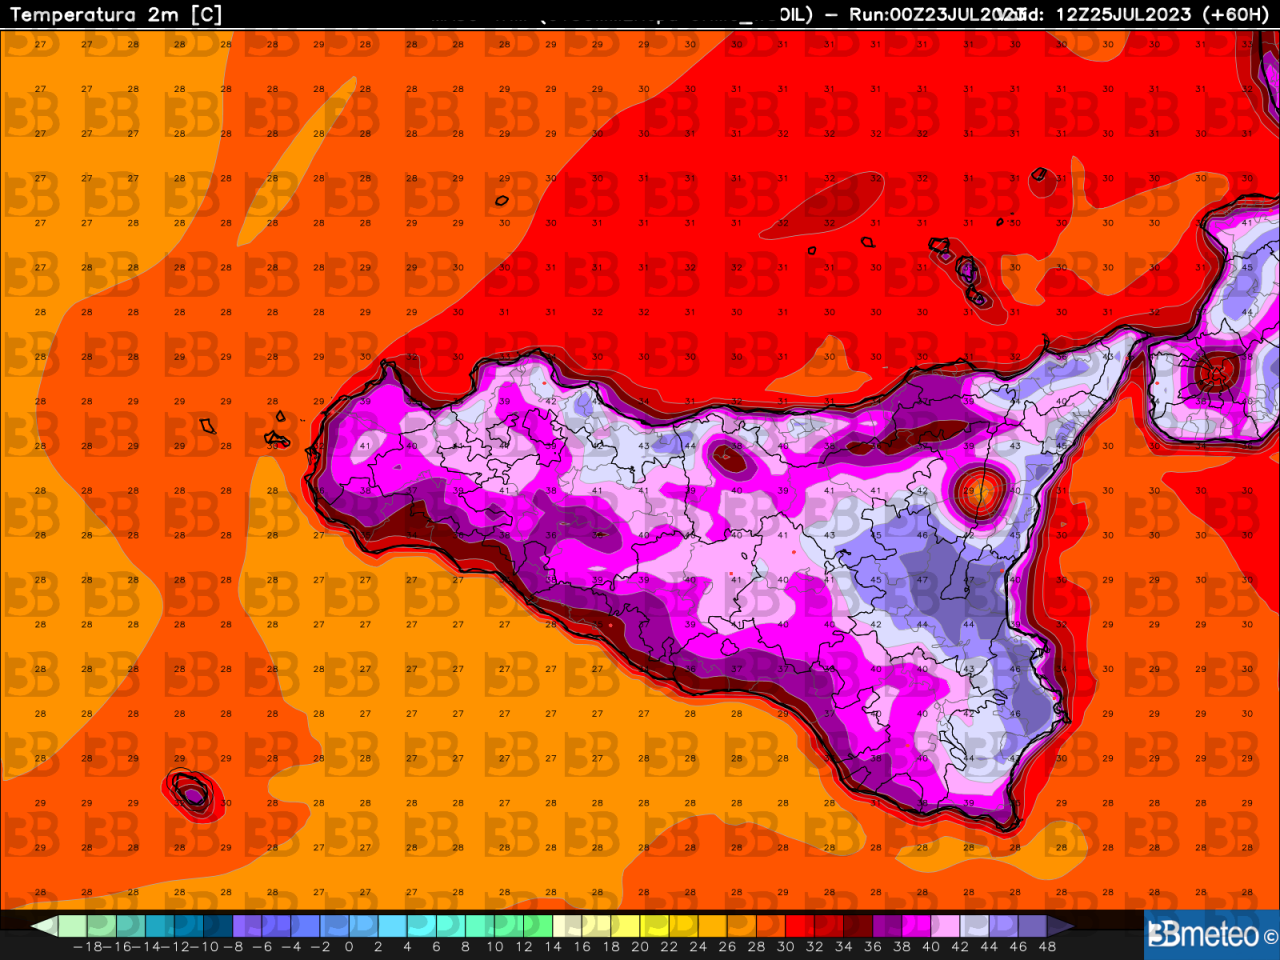 Le temperature massime del 25 luglio simulate dal modello numerico sviluppato da 3bmeteo: possibili picchi di 46-48°C tra la Piana di Catania e il Siracusano, estremi anche lungo la costa ionica